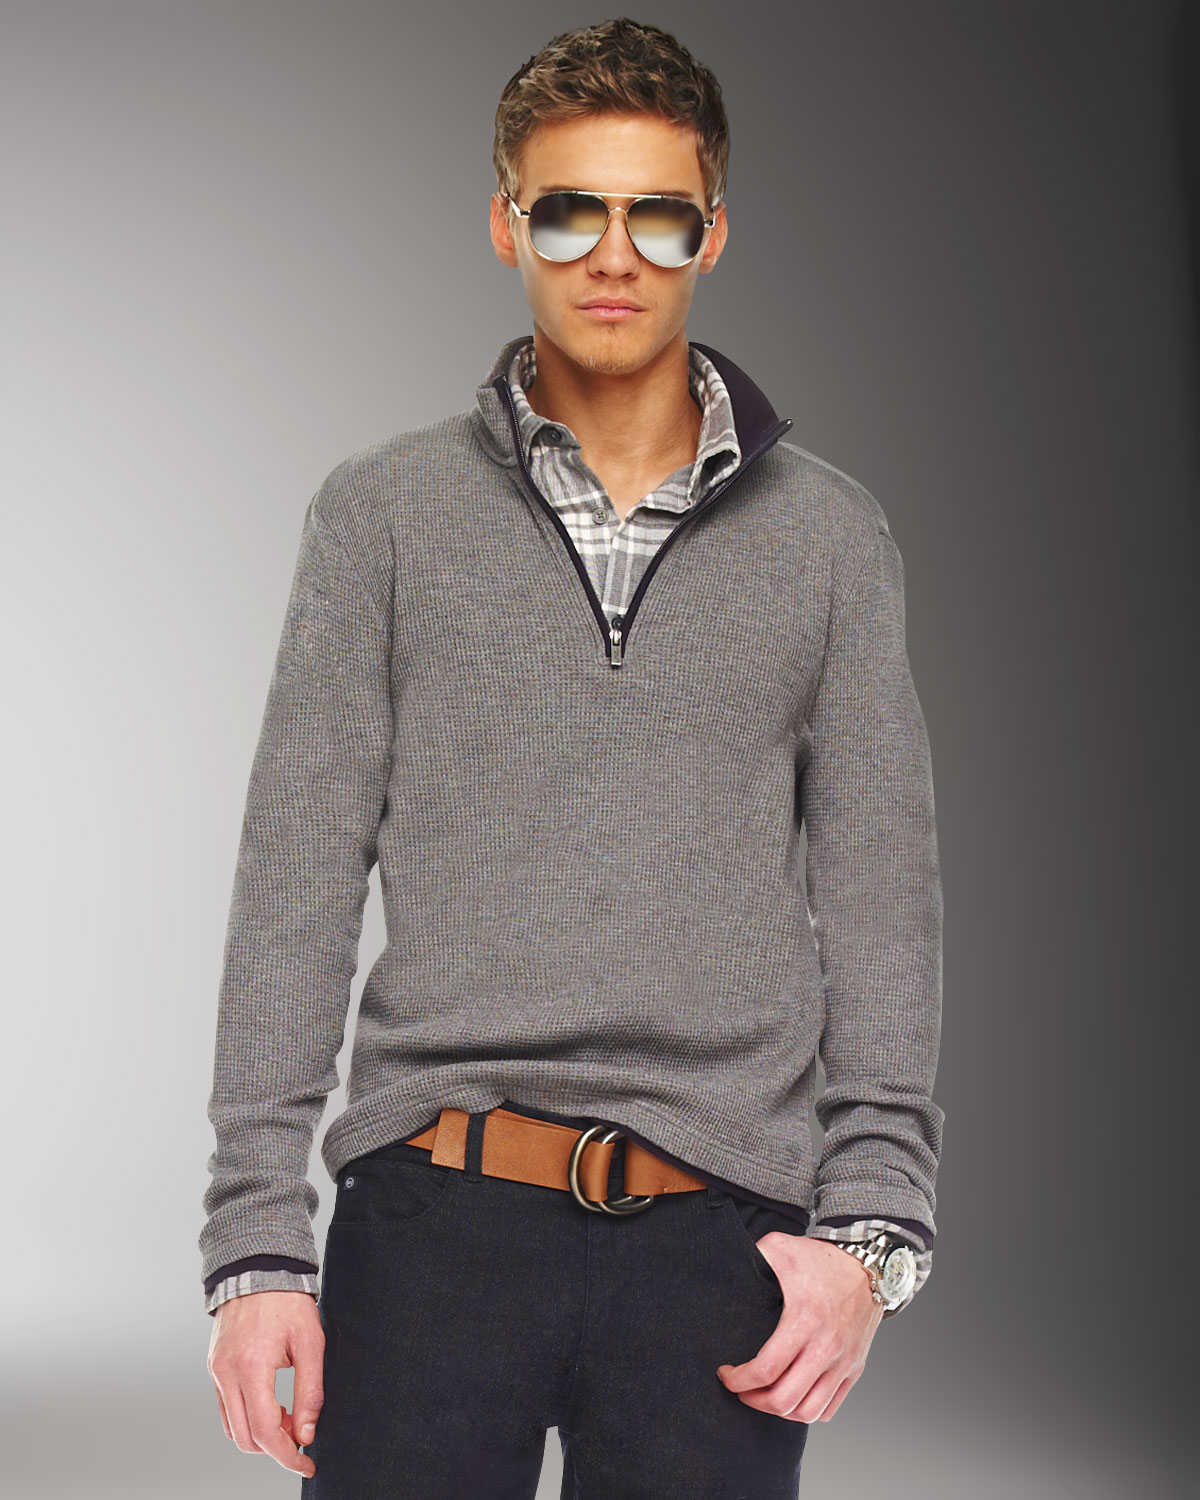 Lyst - Michael Kors Half-zip Sweater, Ash Melange in Gray for Men